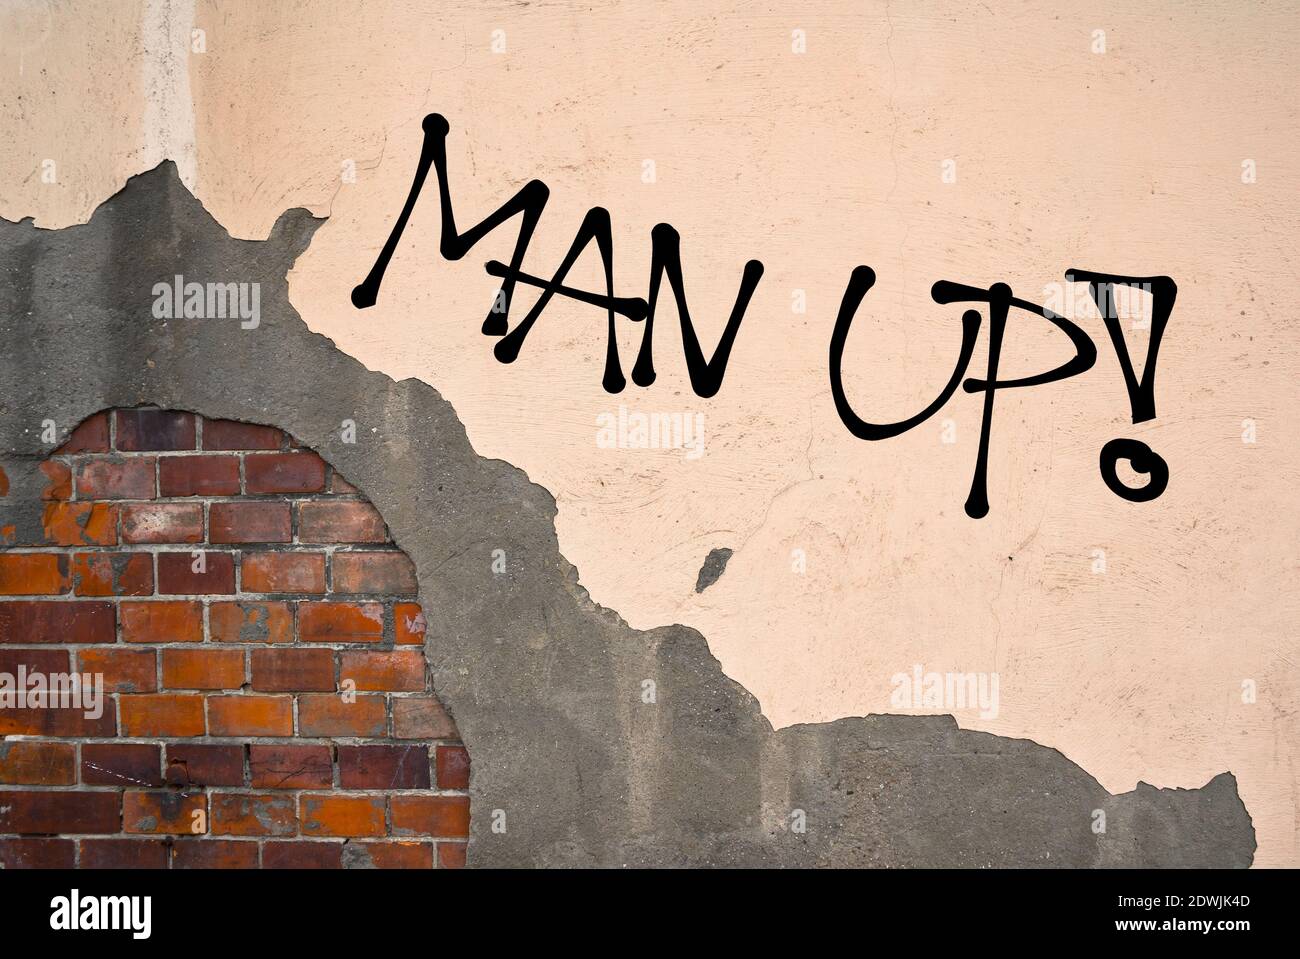 Man Up - graffiti manuscrito rociado en la pared - motivación y challege para ser fuerte, valiente, valiente y valiente hombre en lugar de ser débil y un Foto de stock